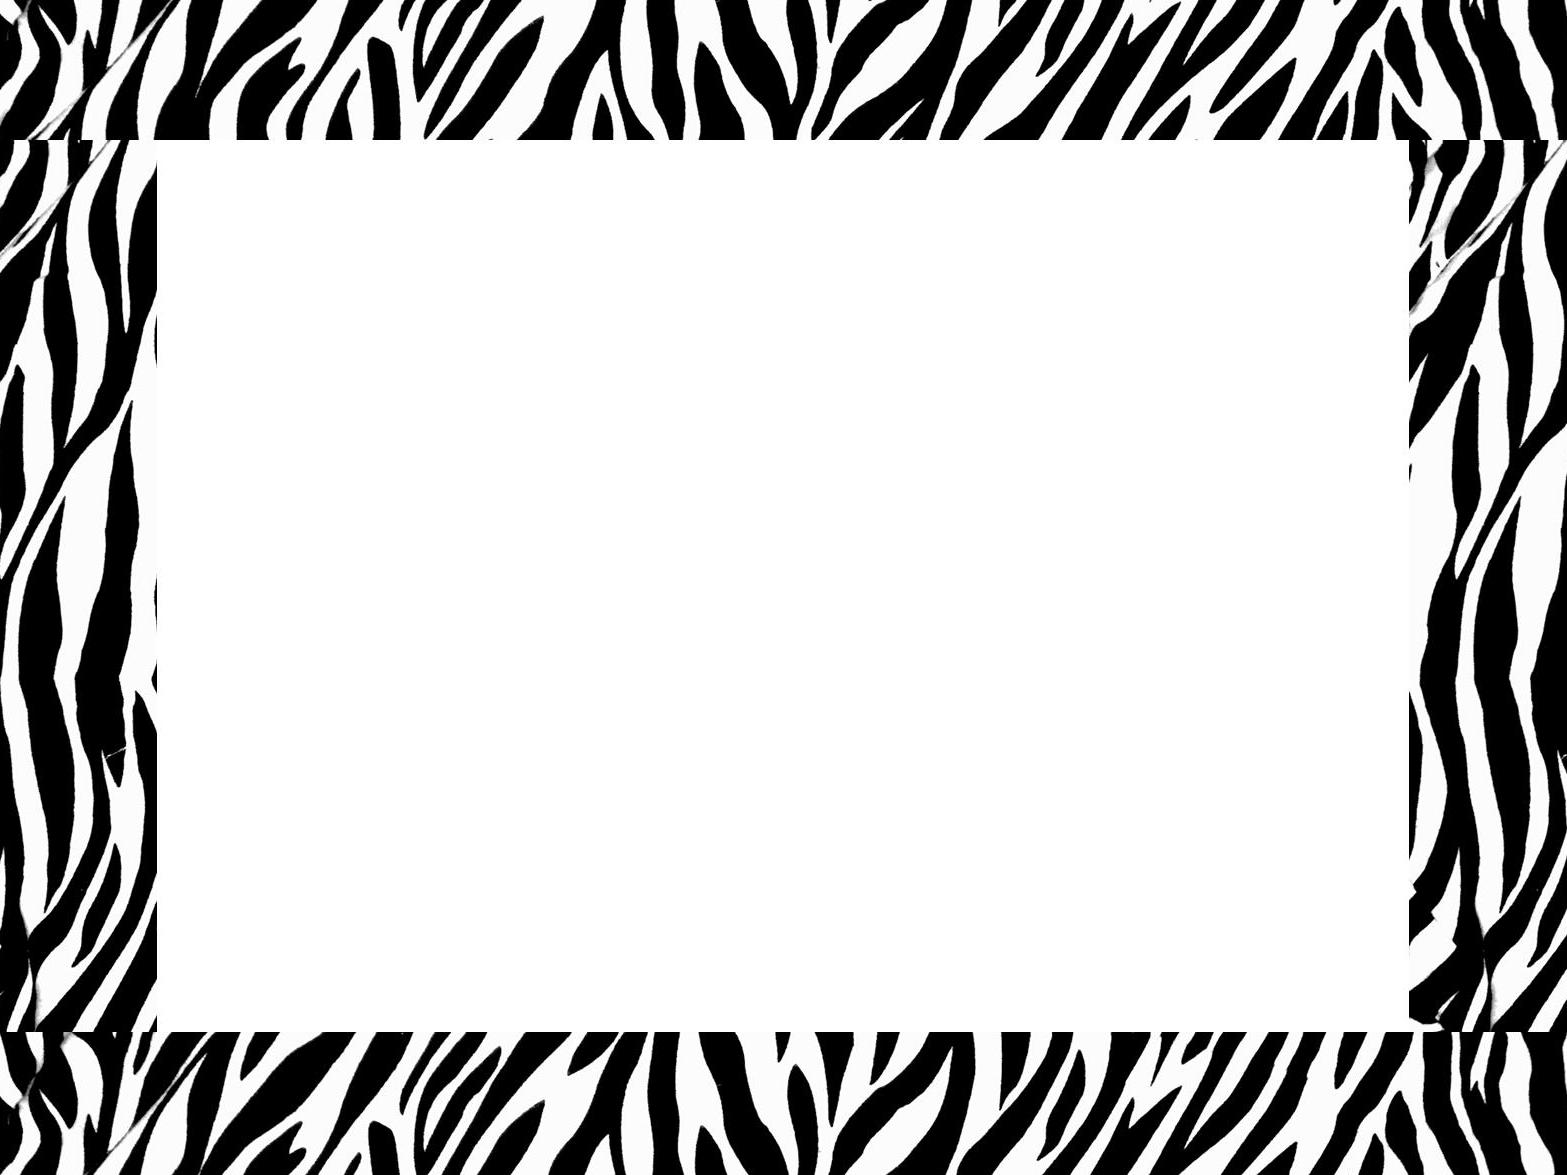 zebra+border.jpg